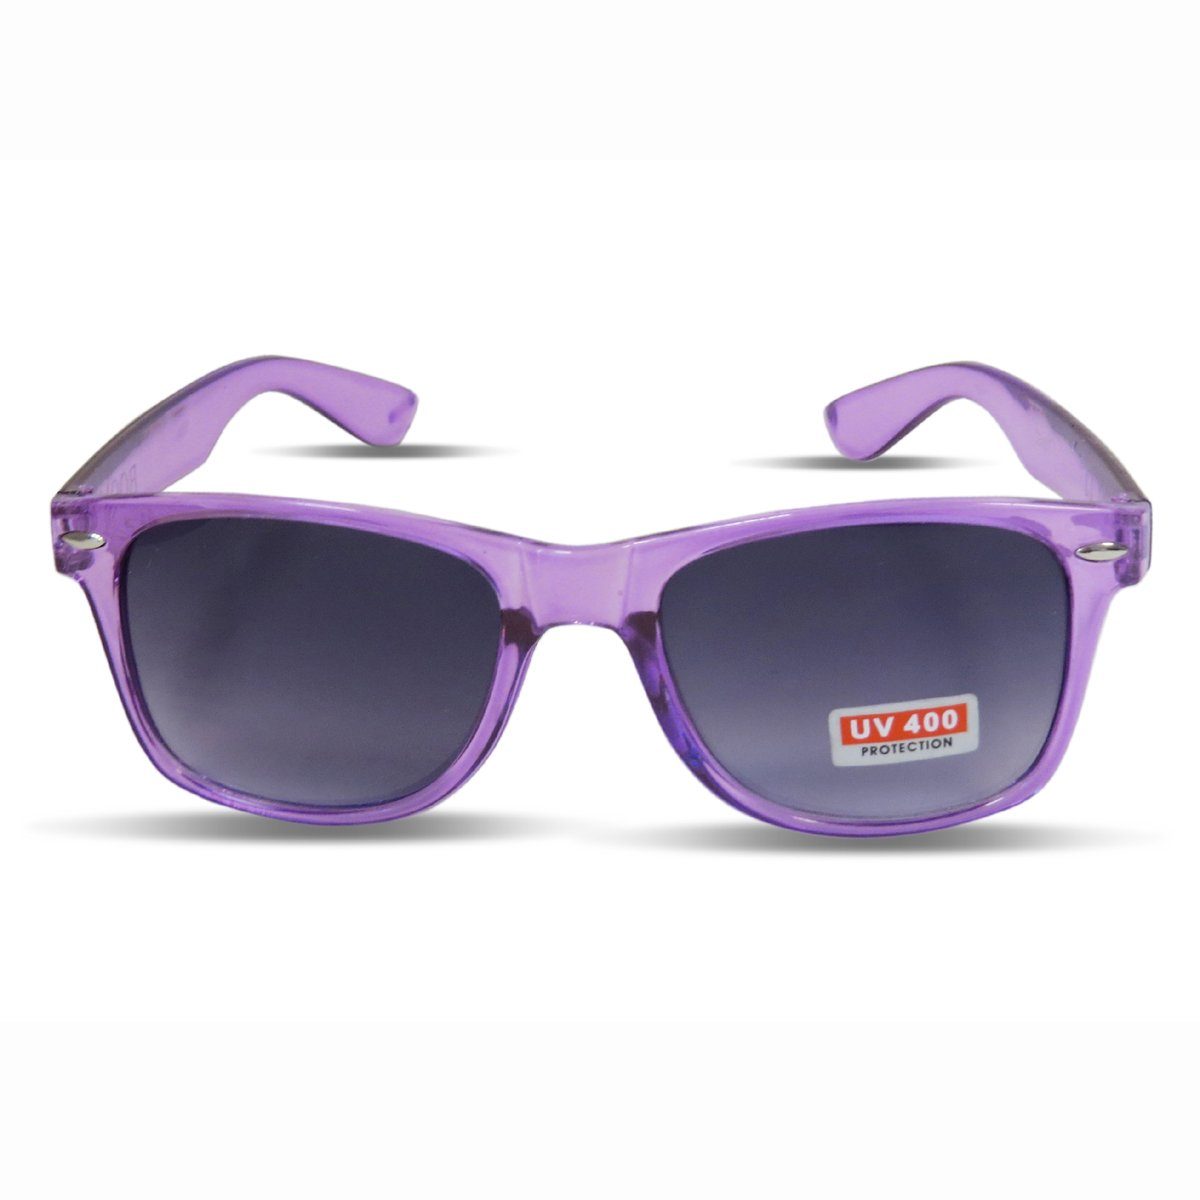 Sonia Originelli Sonnenbrille Sonnenbrille Einfarbig Transparent Partybrille Spaß Fasching Onesize lila